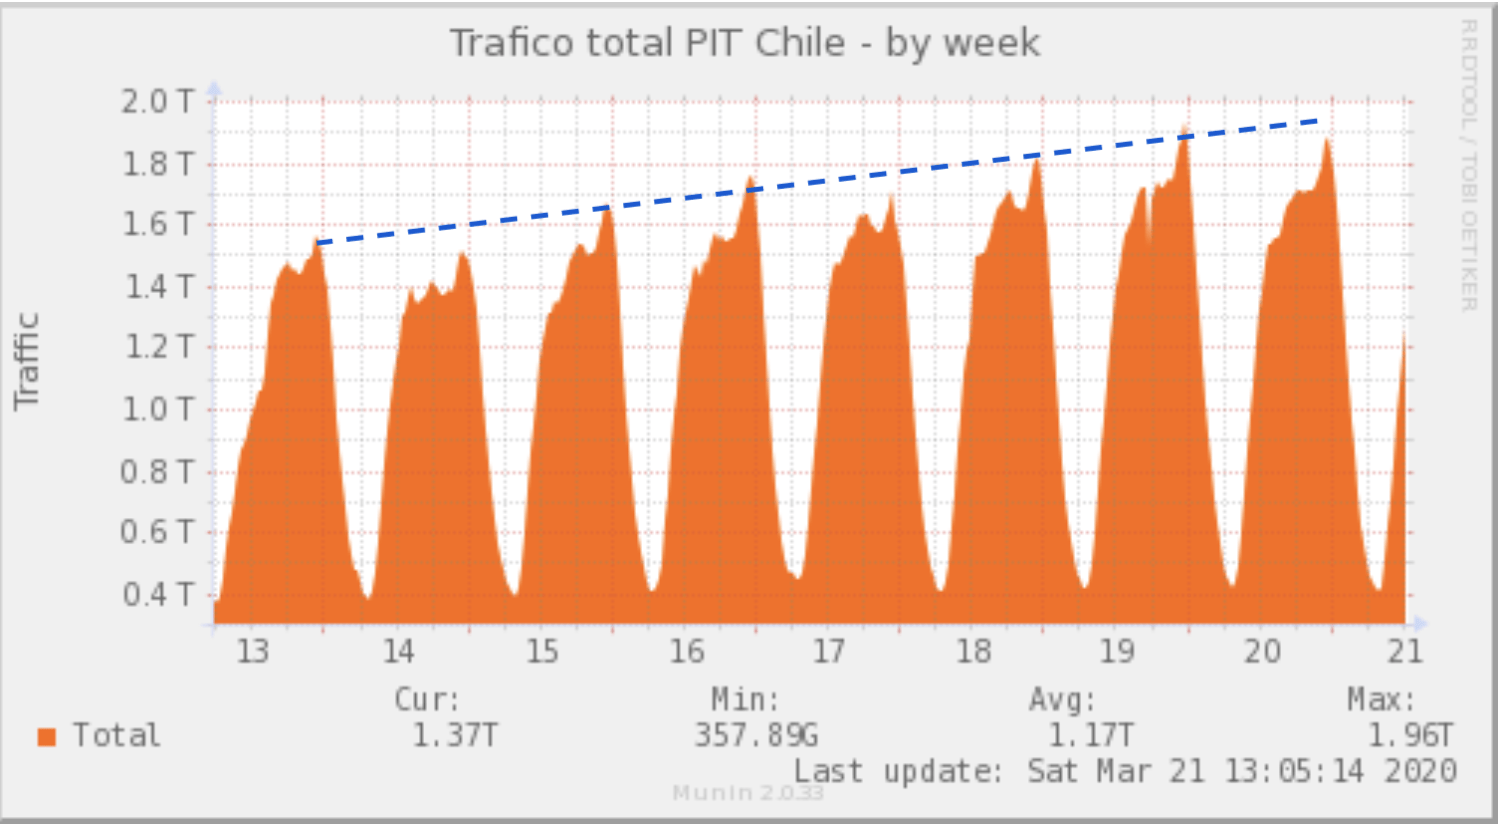 Tráfico semanal medido en PIT Chile